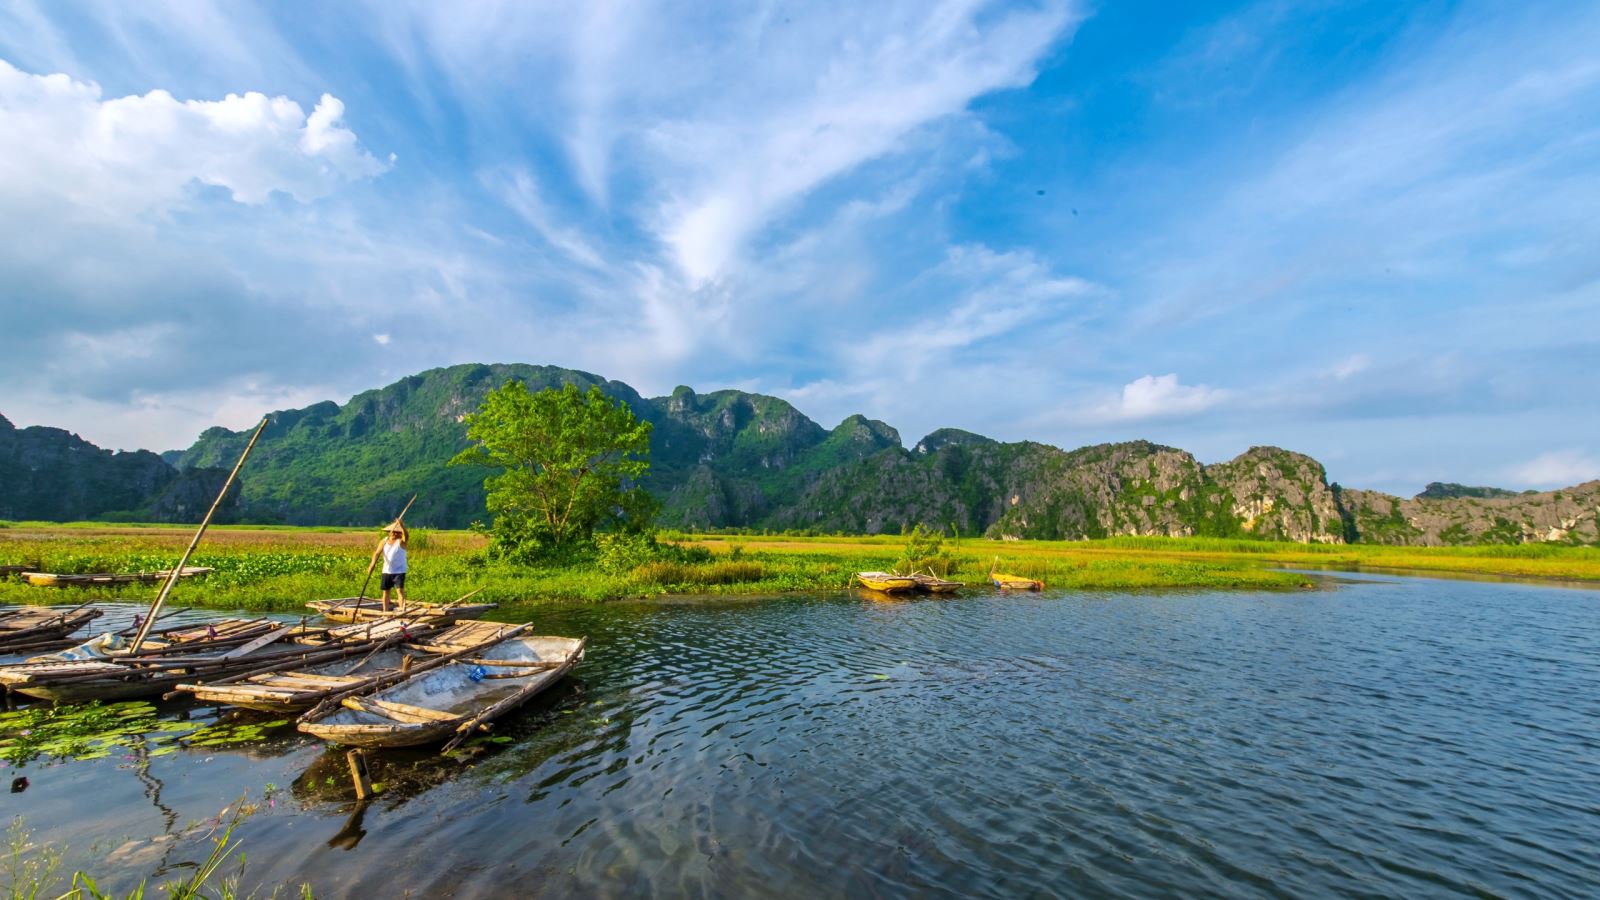 Vẻ đẹp khu du lịch Vân Long - Ninh Bình như bức tranh thuỷ mạc khổng lồ